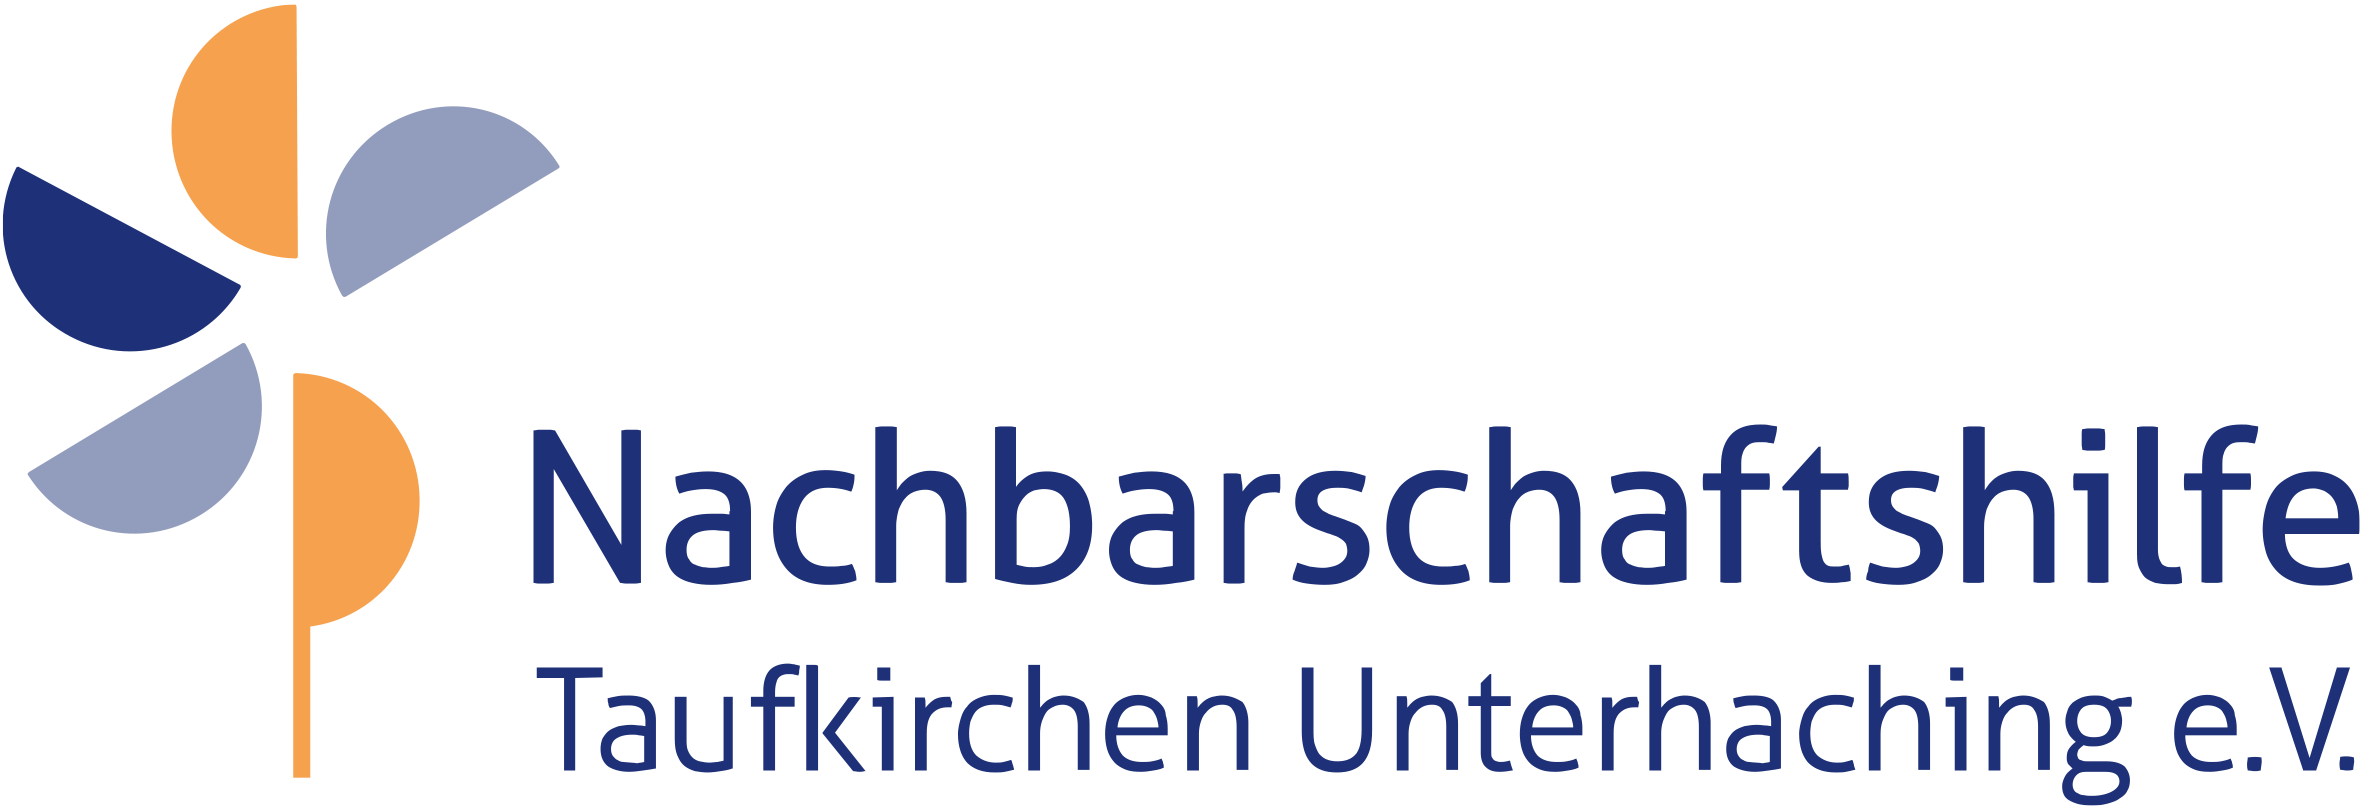 Nachbarschaftshilfe Taufkirchen Unterhaching - Bürgerschaftliches Engagement